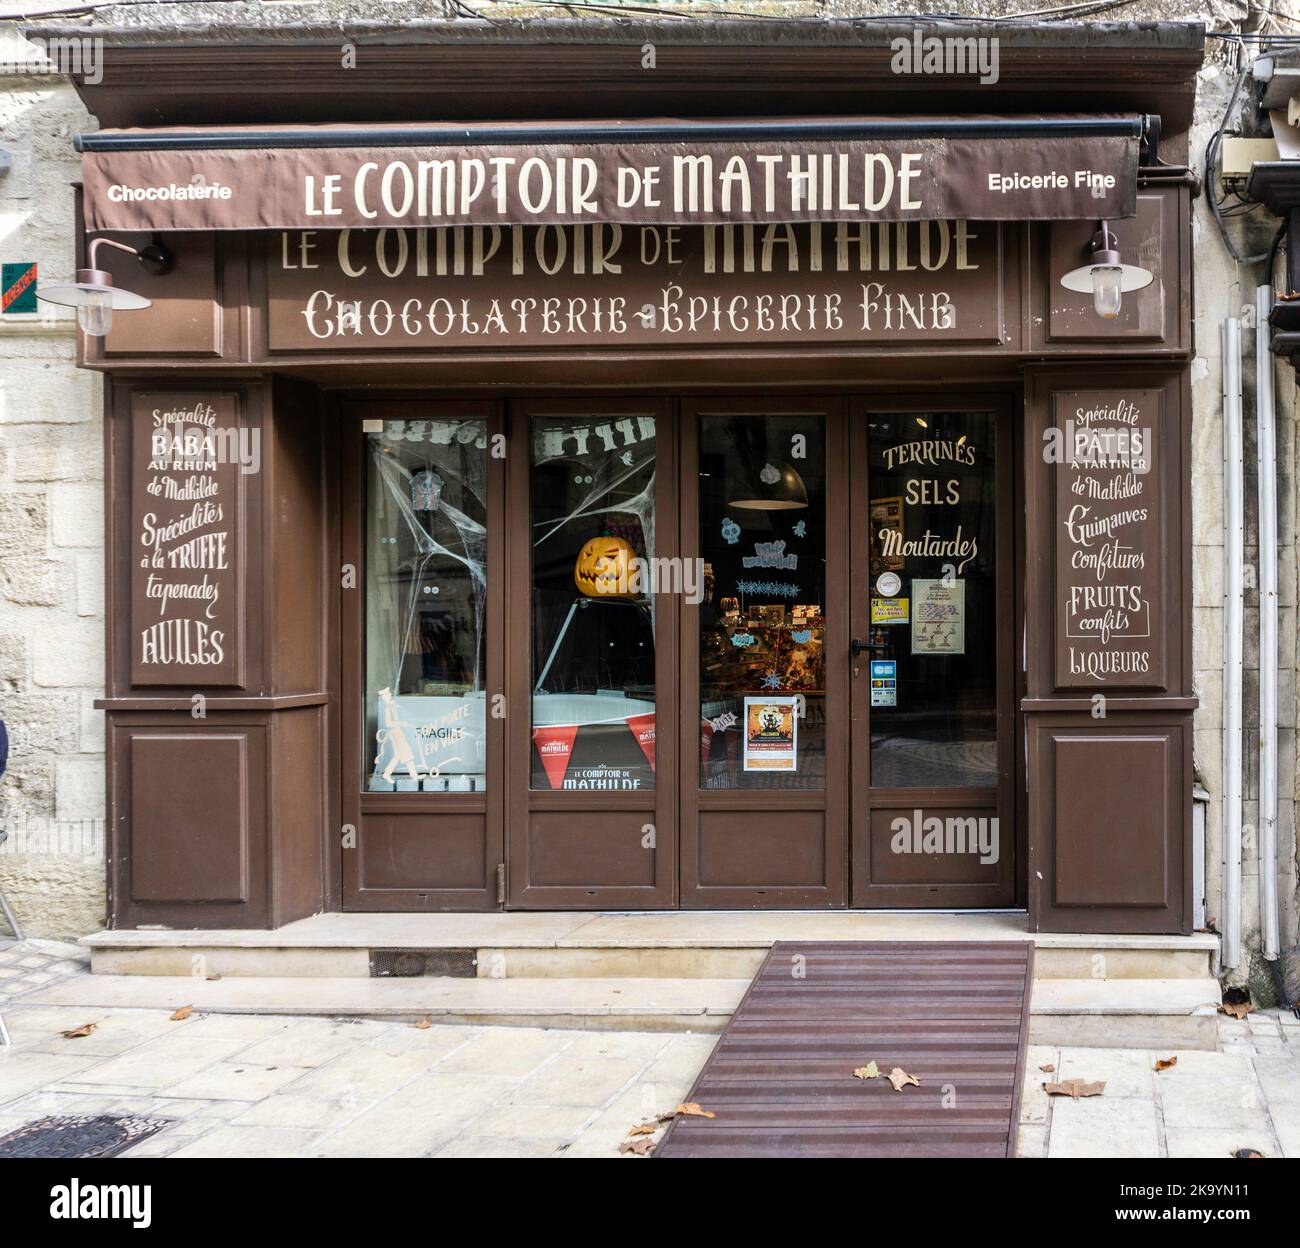 Eine Niederlassung von Le Comptoir de Mathilde in Uzes, Frankreich, die eine Reihe von Schokolade- und Feinkostprodukten verkauft. Stockfoto